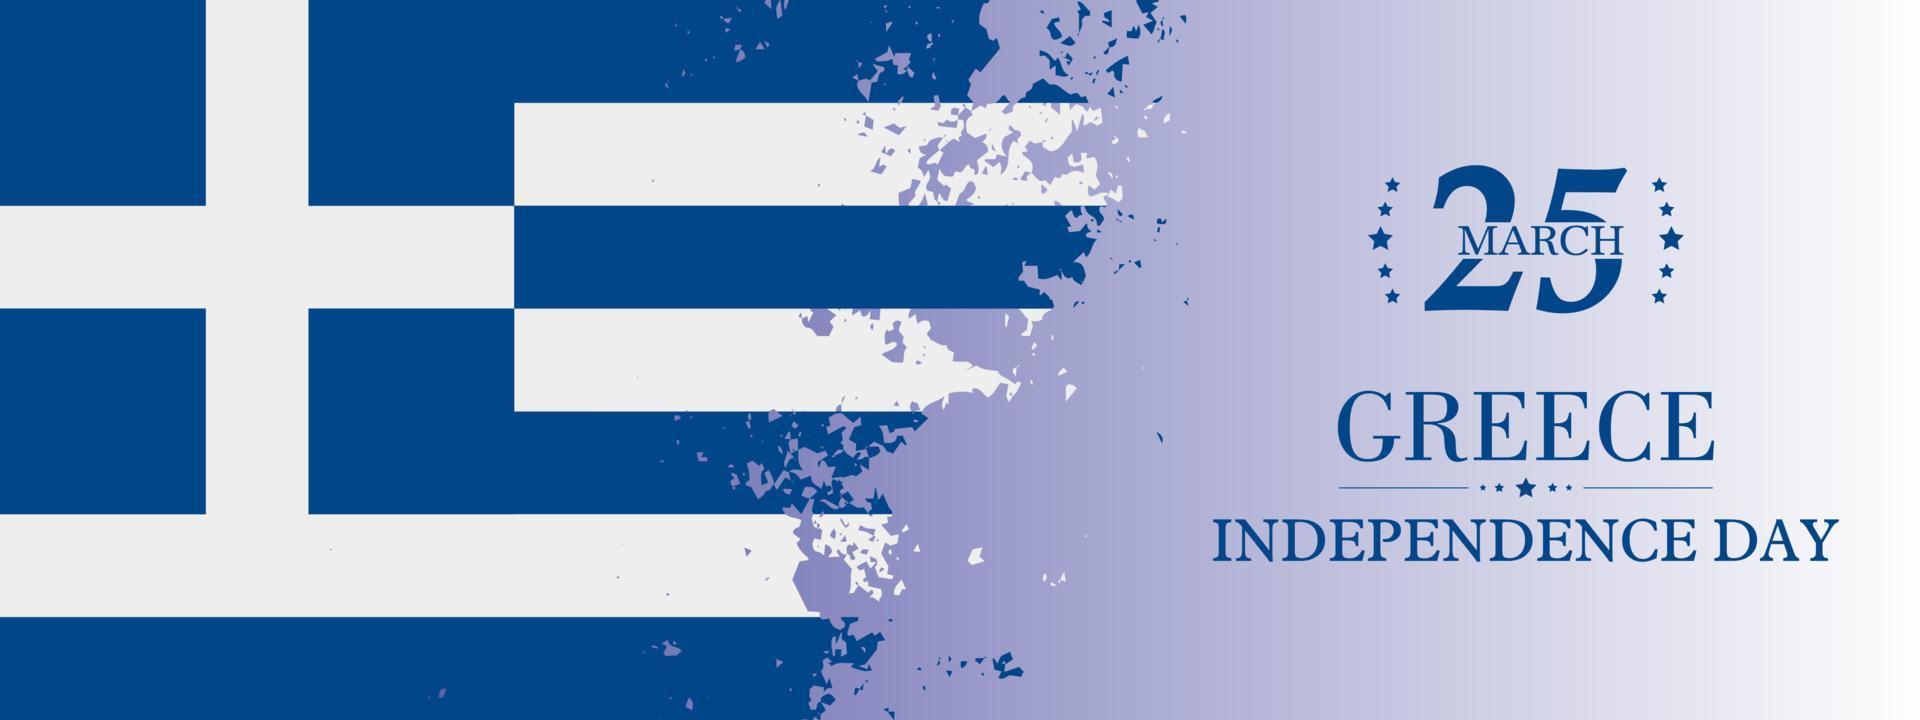 textura grunge de la bandera de grecia, día de la independencia griega el 25 de marzo. ilustración vectorial vector